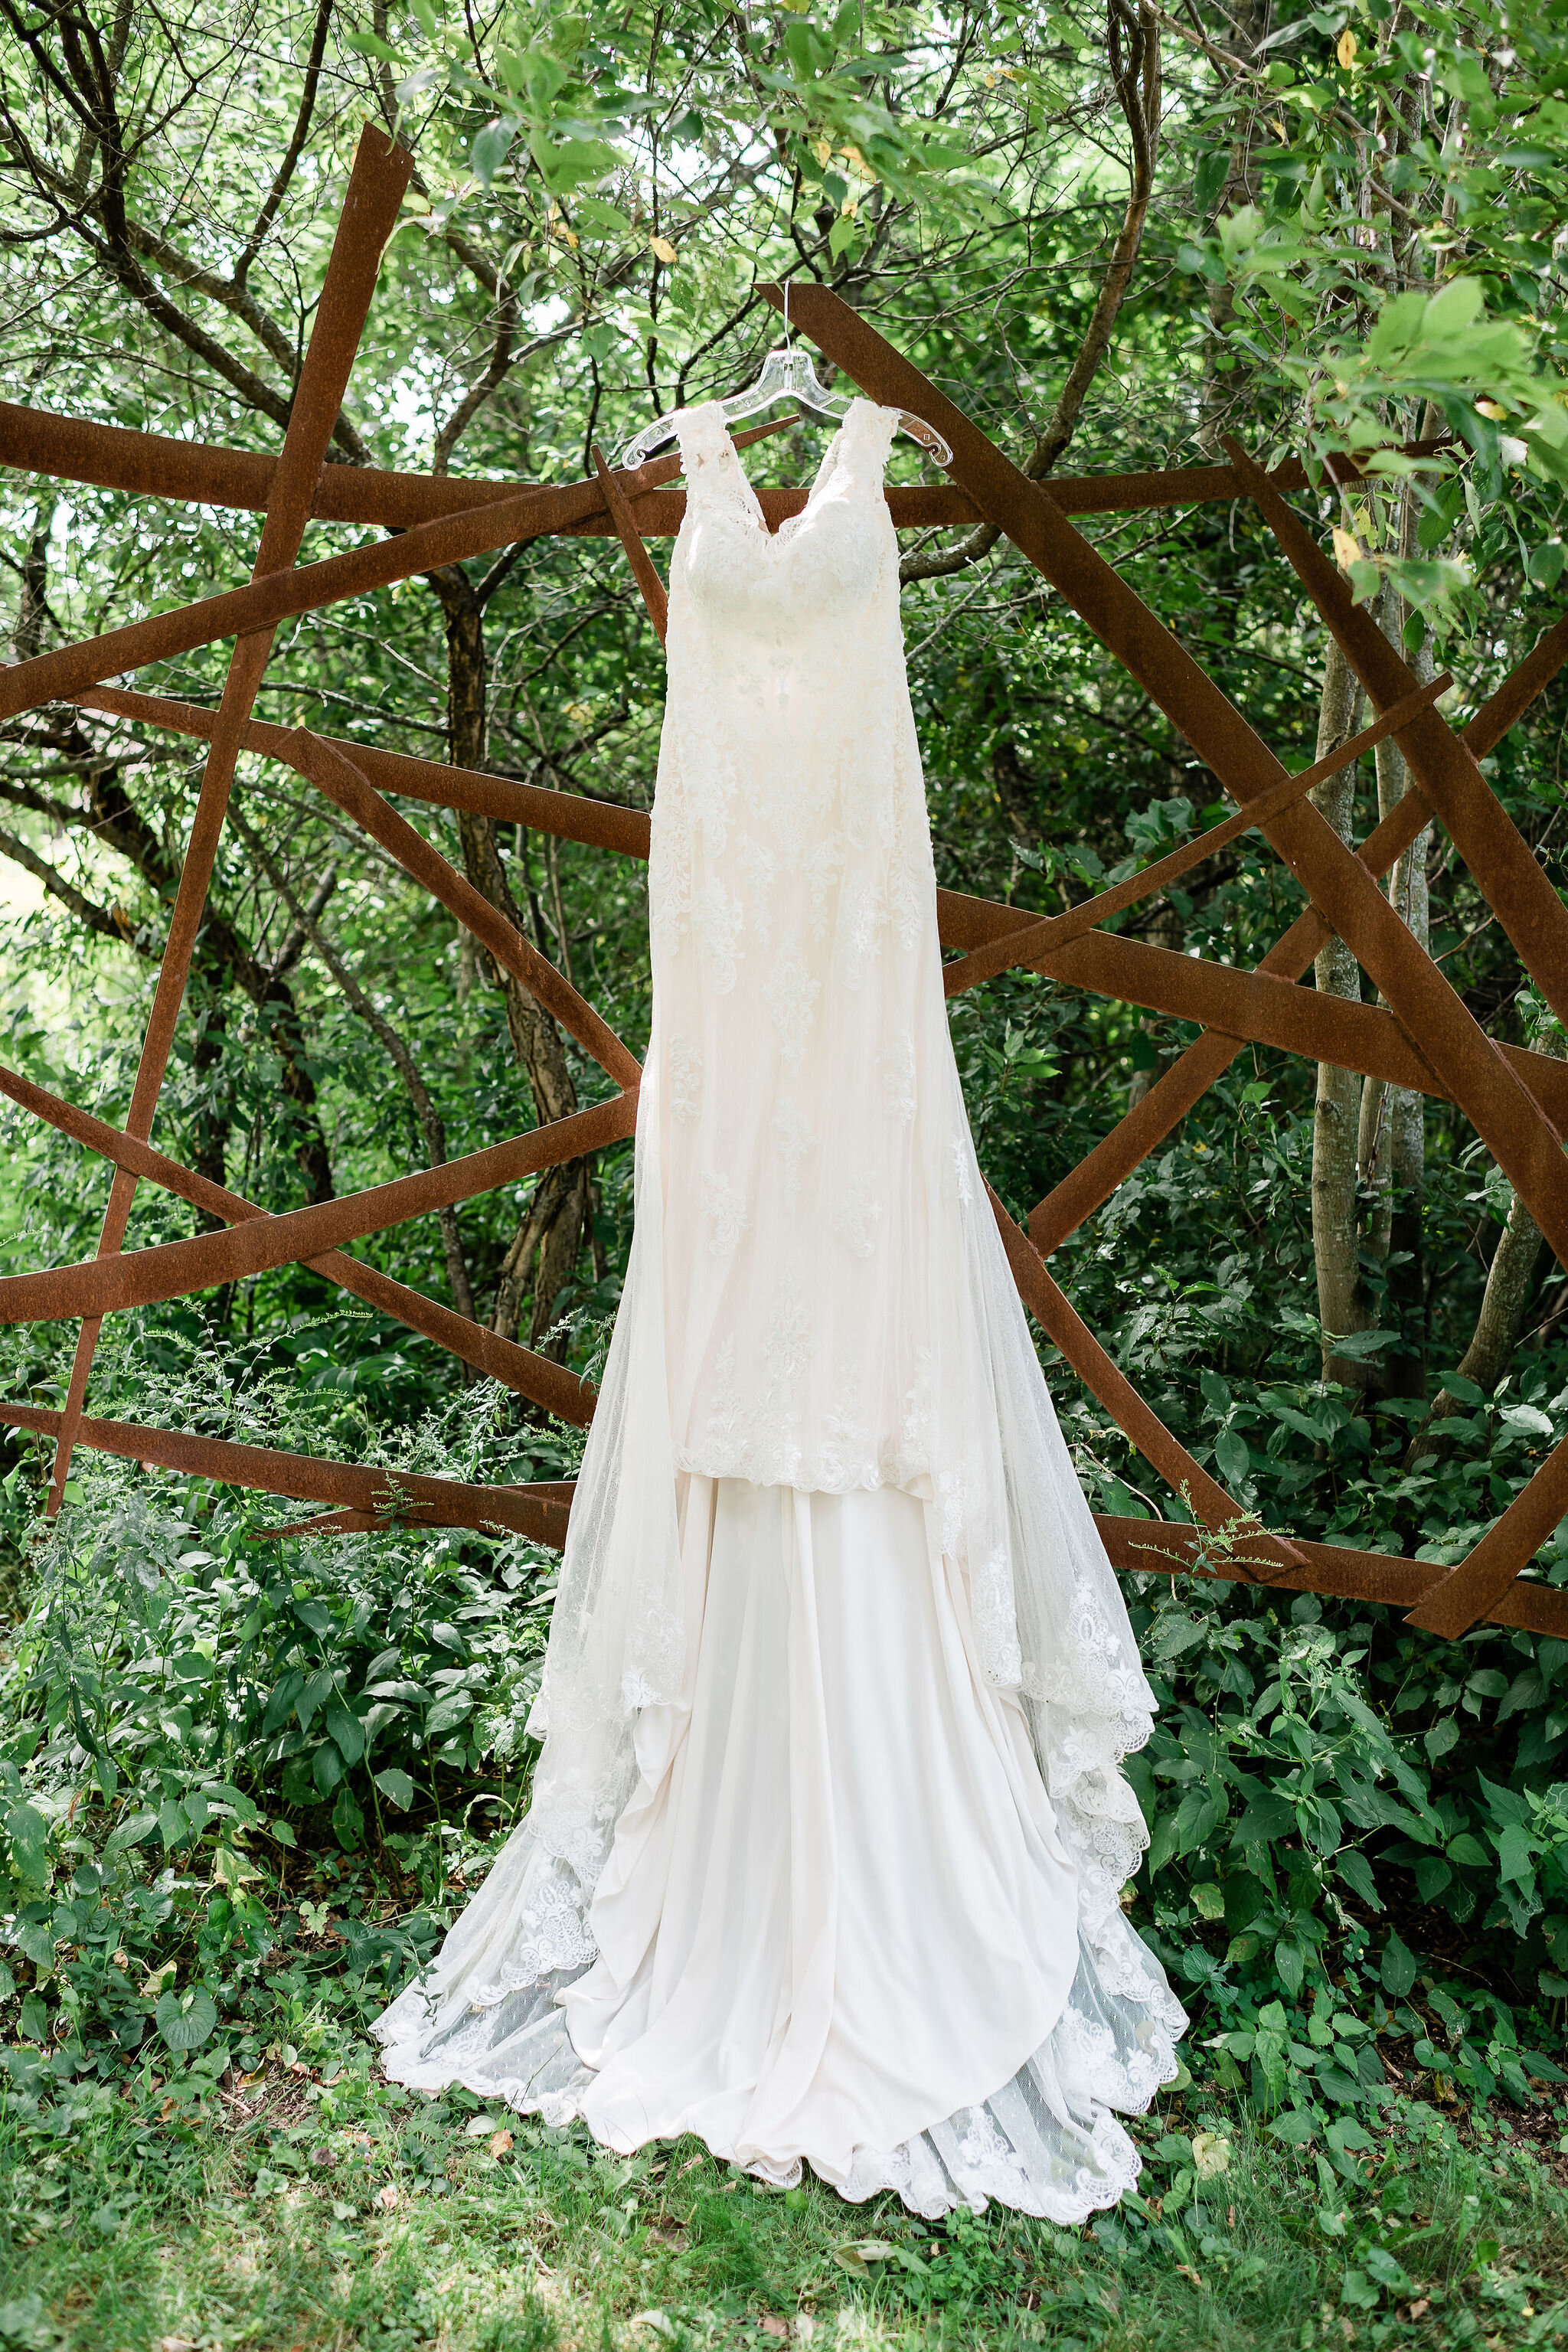 Wedding dress hanging from a garden sculpture